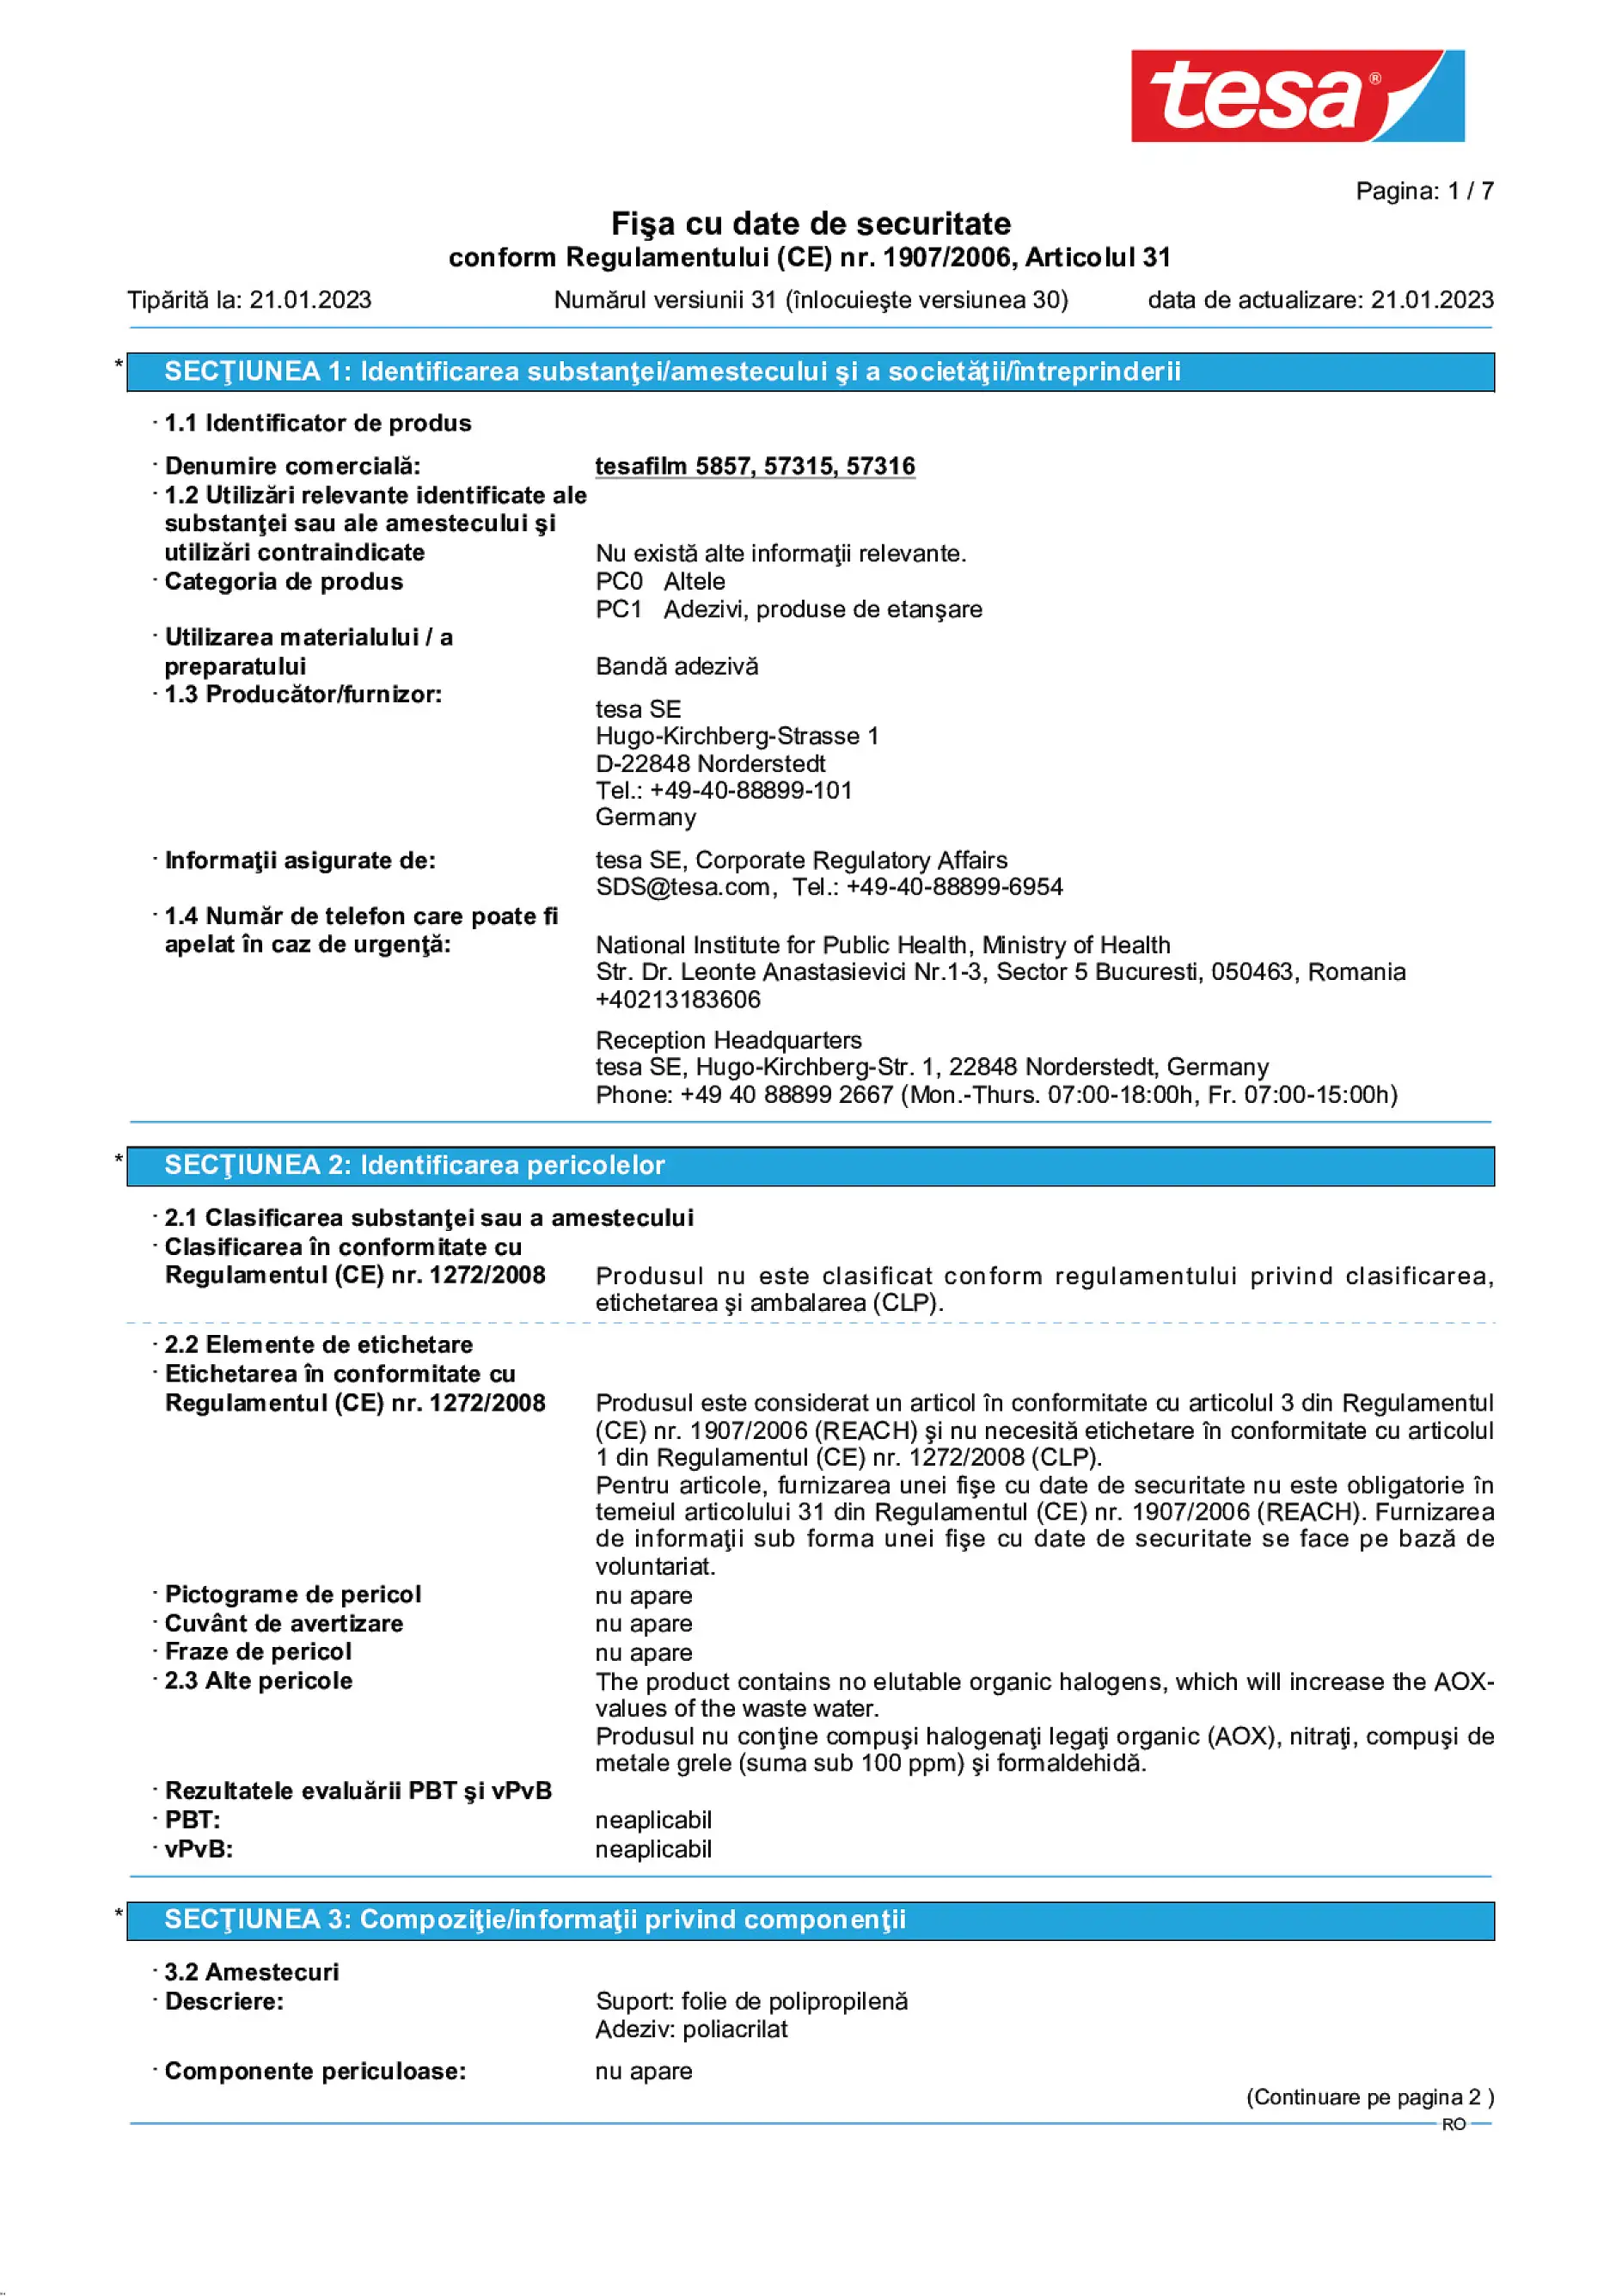 Safety data sheet_tesafilm® 57315_ro-RO_v31